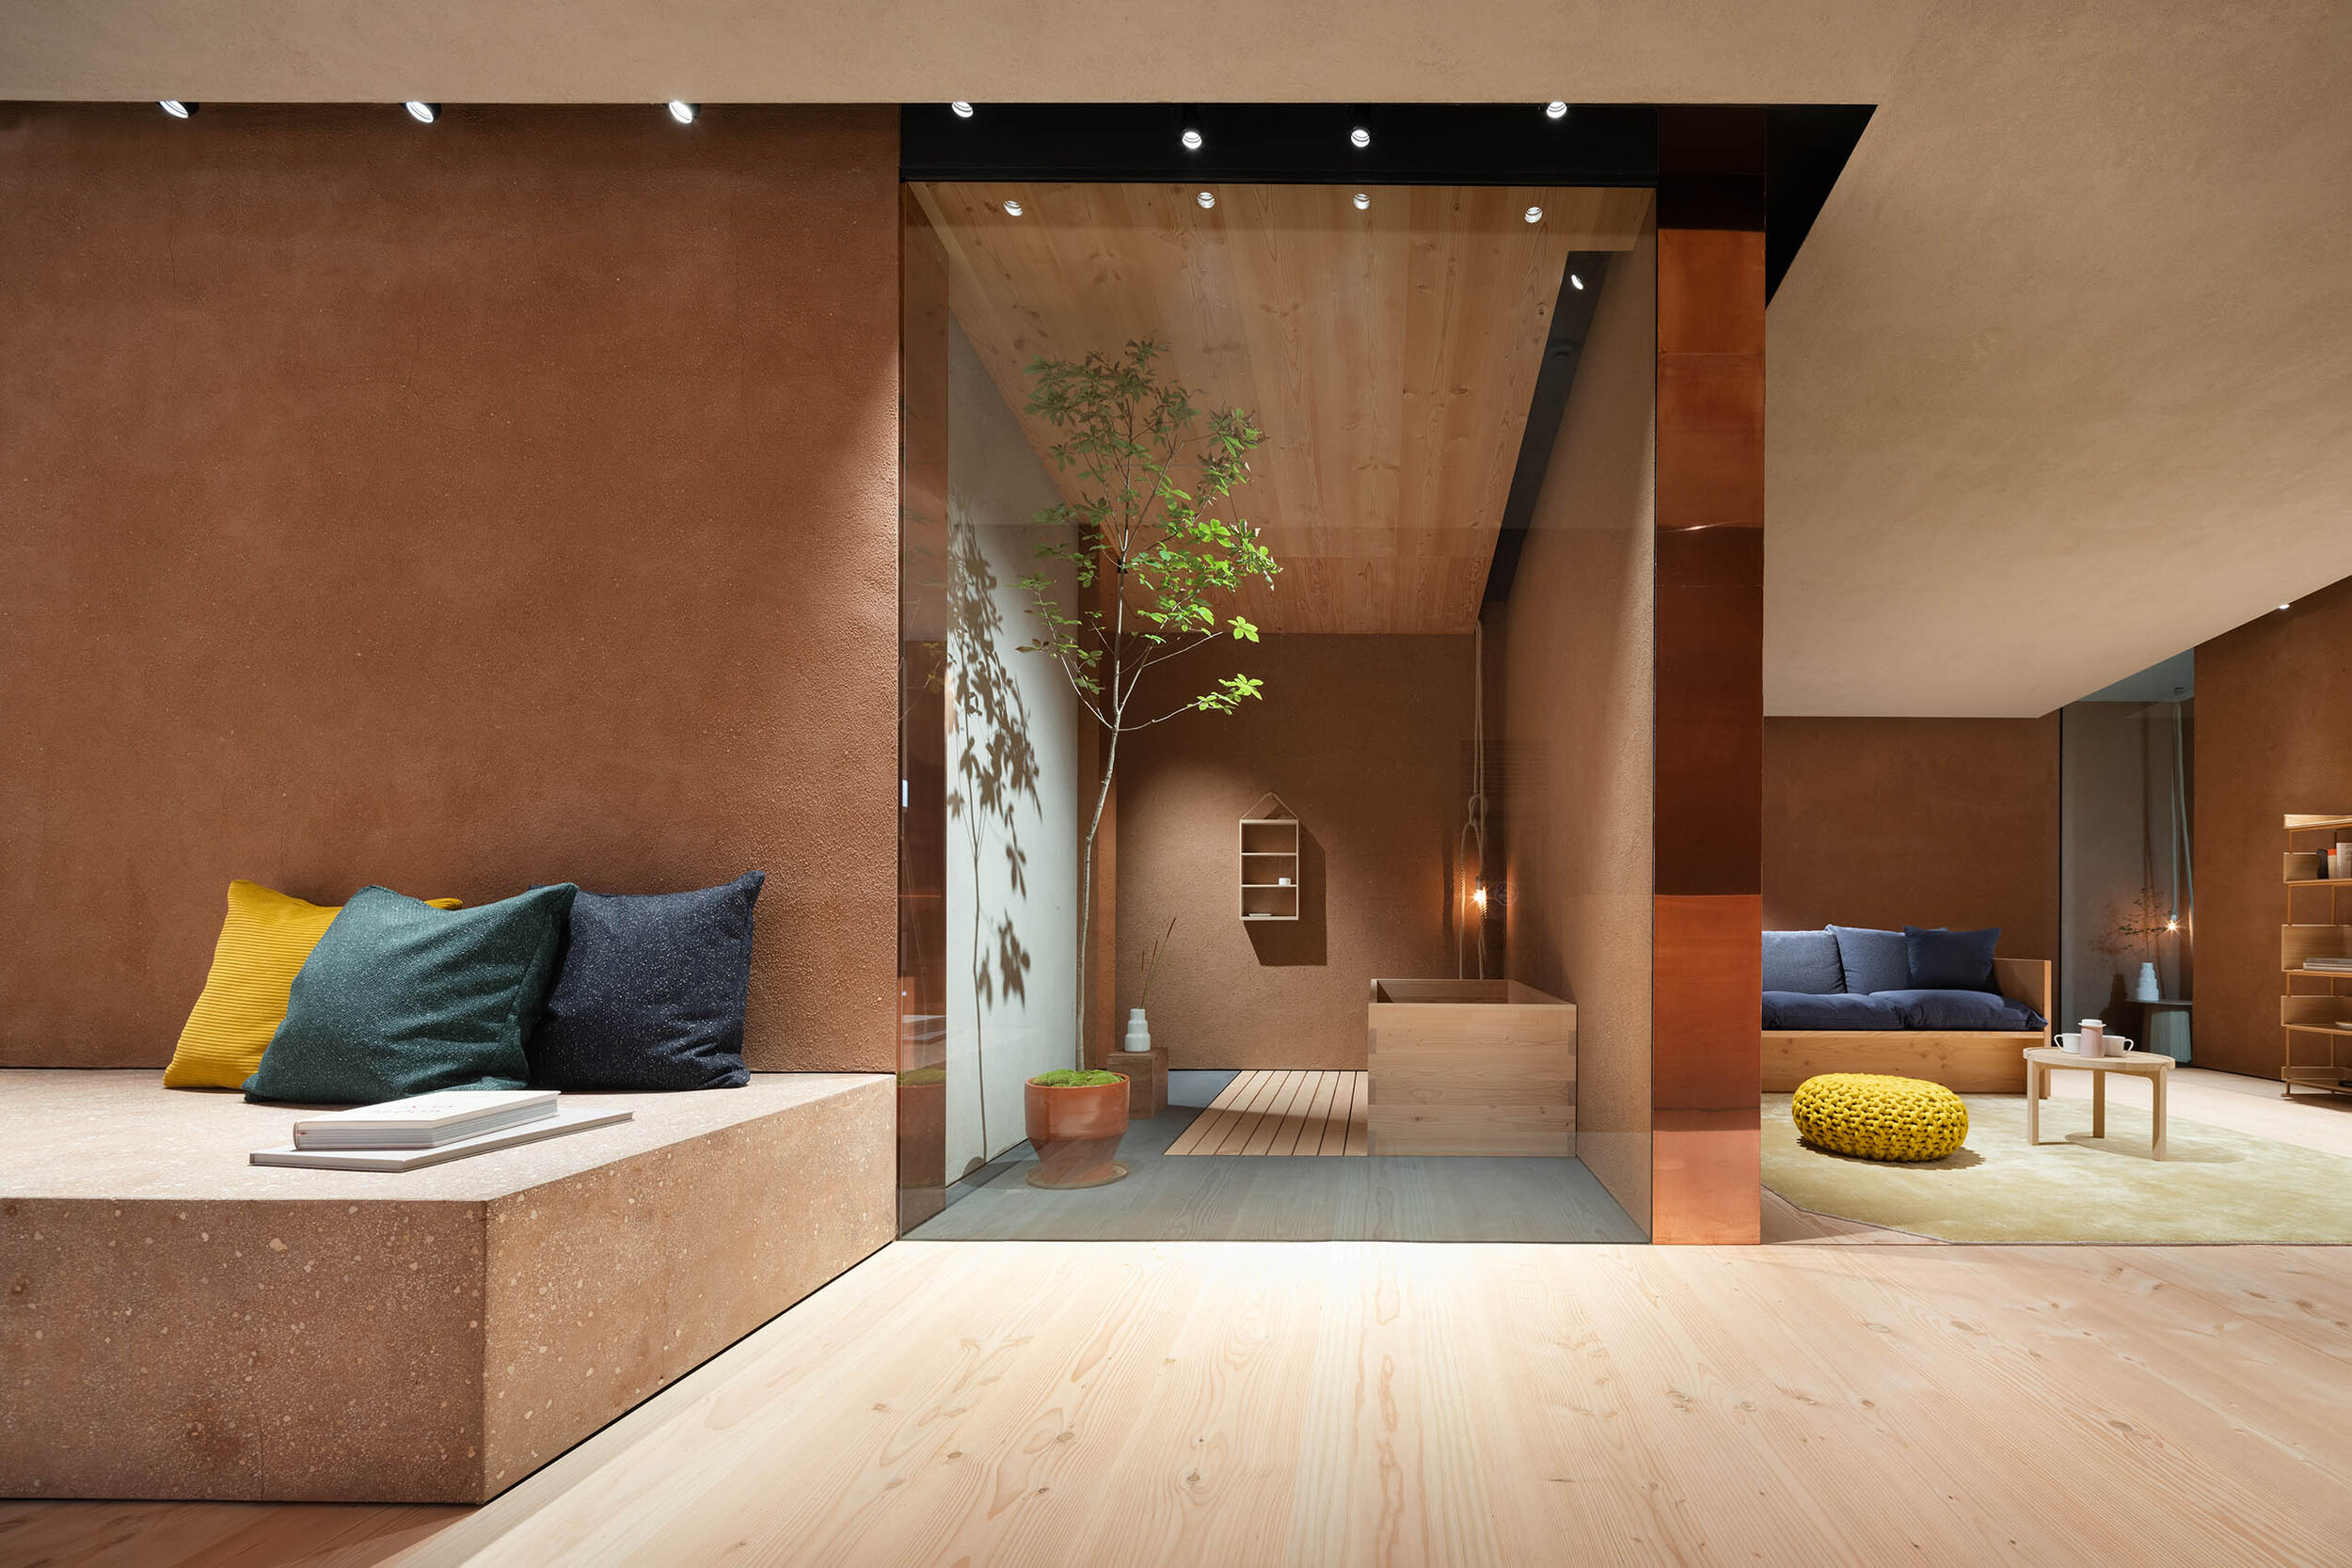  Teruhiro Yanagihara Studio has designed bathroom for 1616/arita japan showroom in Arita, Japan. 